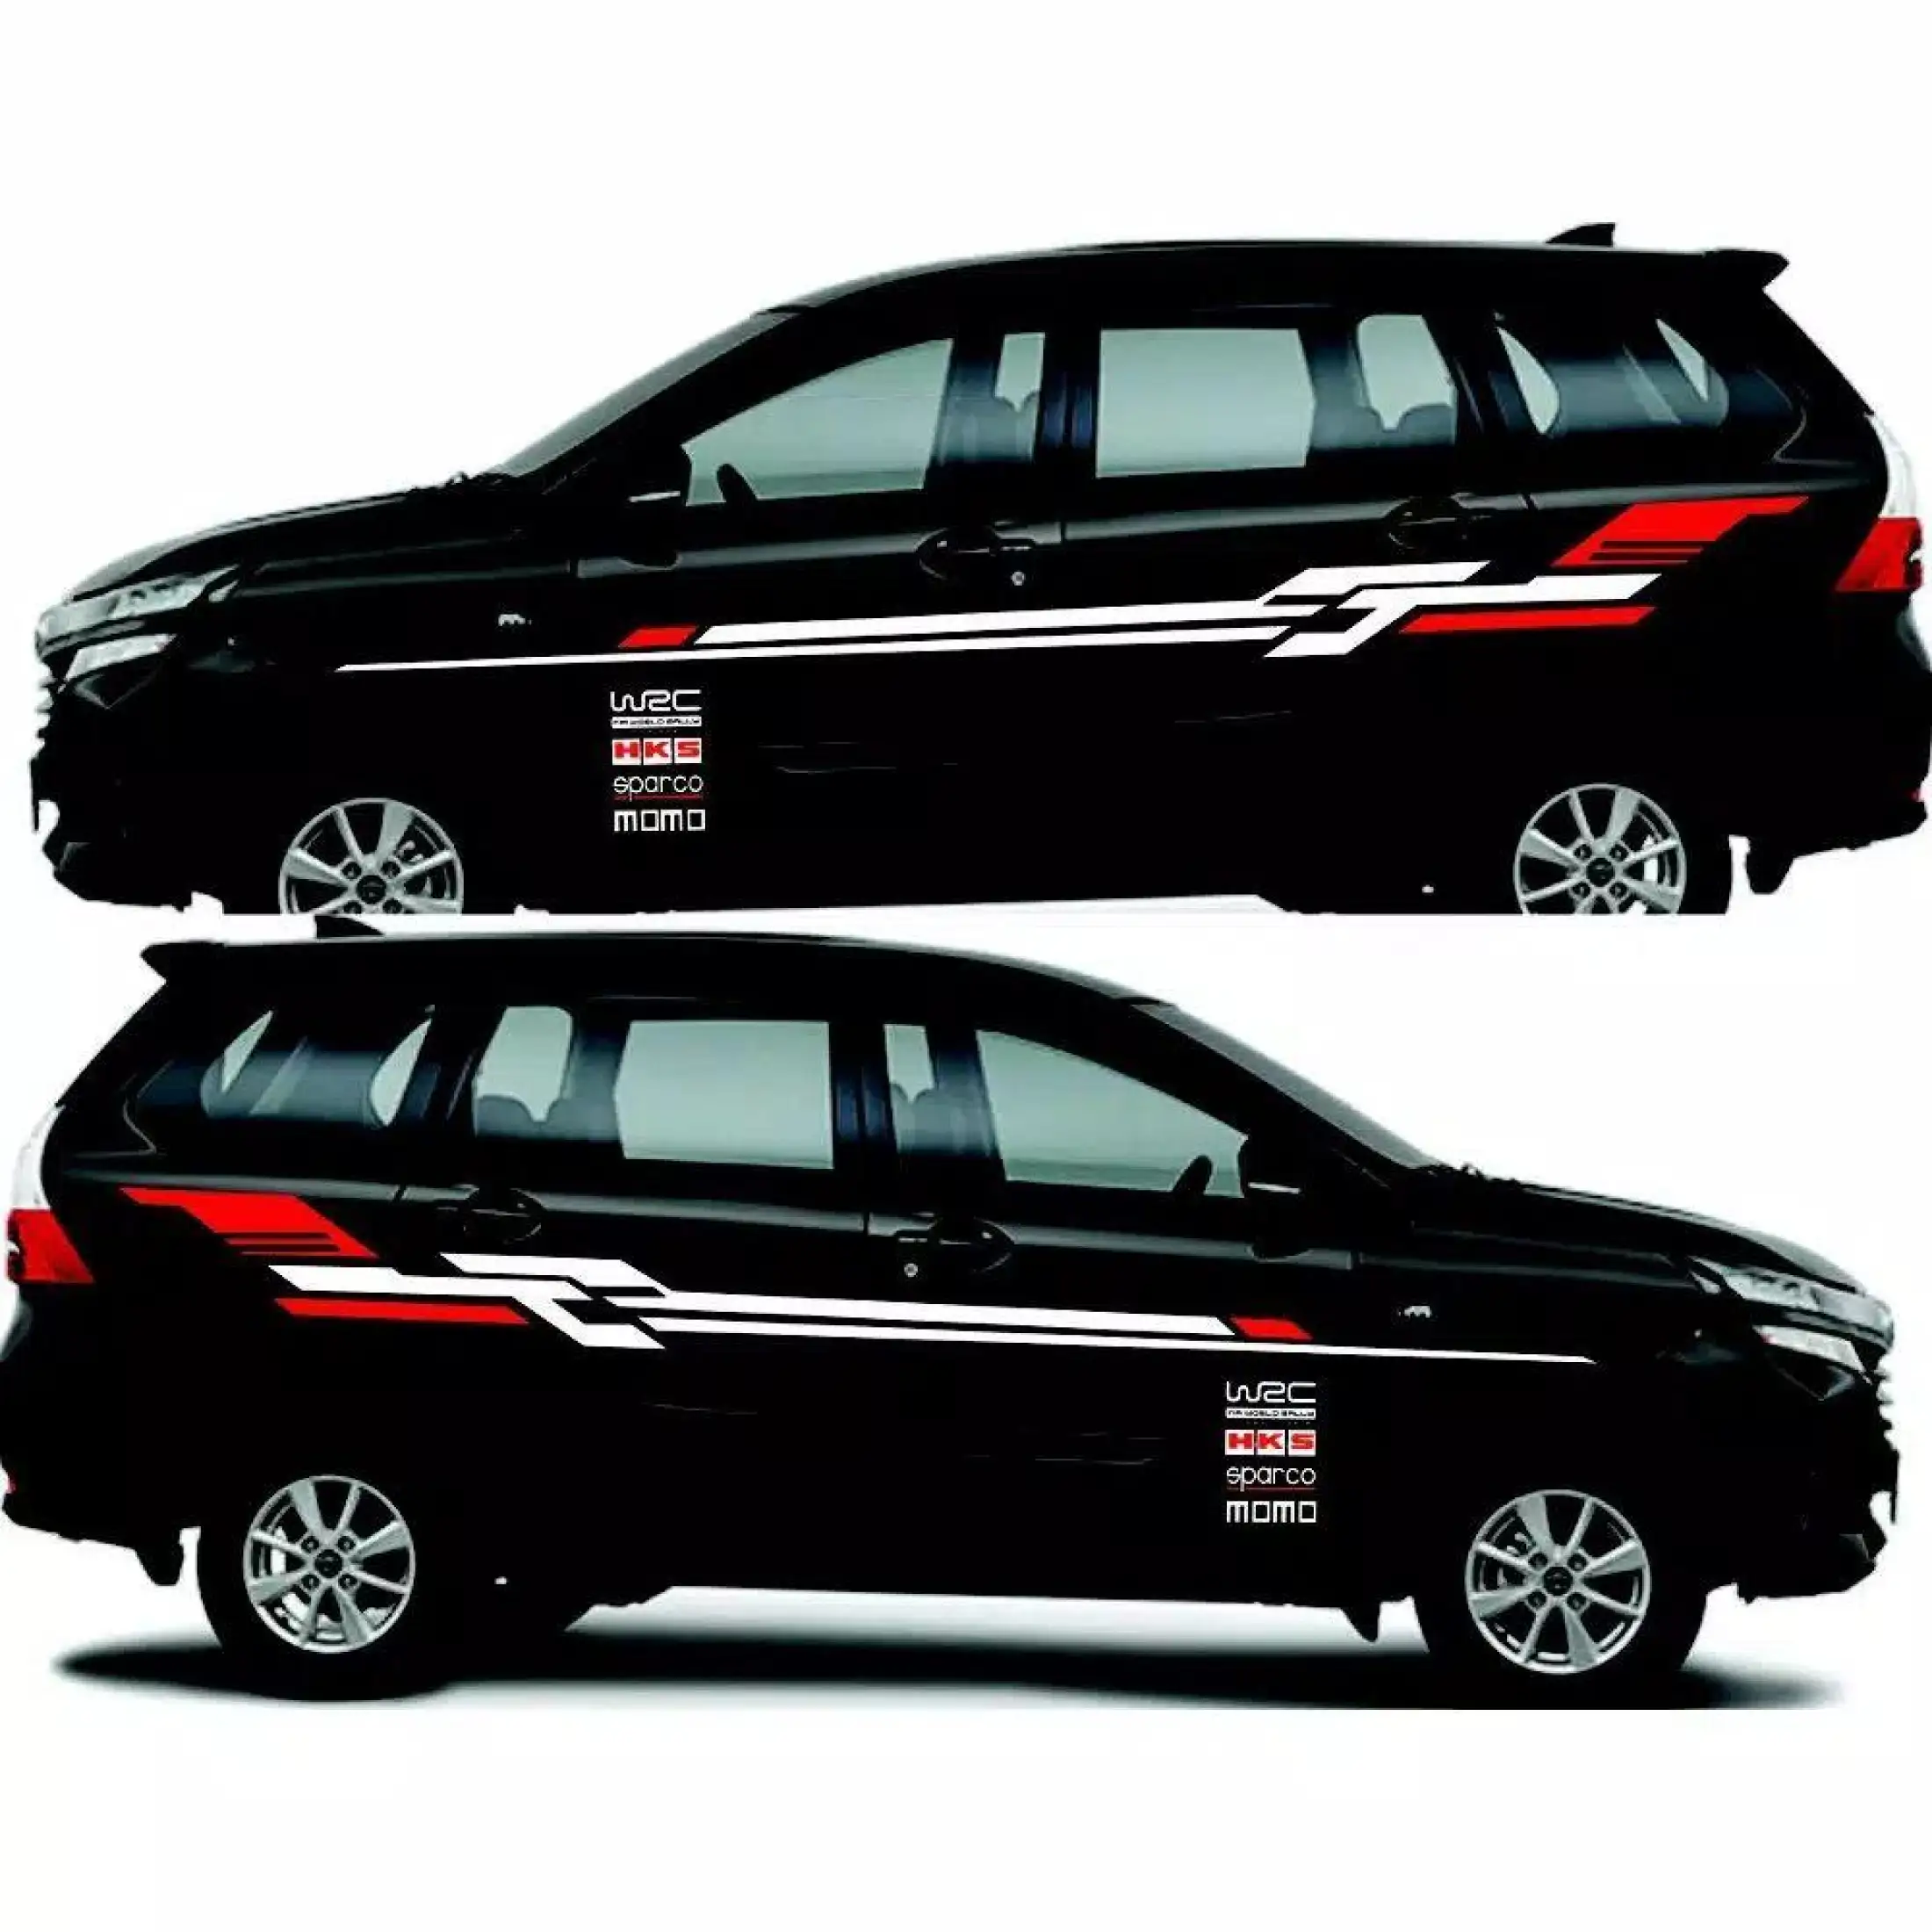 Terbaru Cutting Sticker Mobil Xenia Ertiga Dll Lazada Indonesia